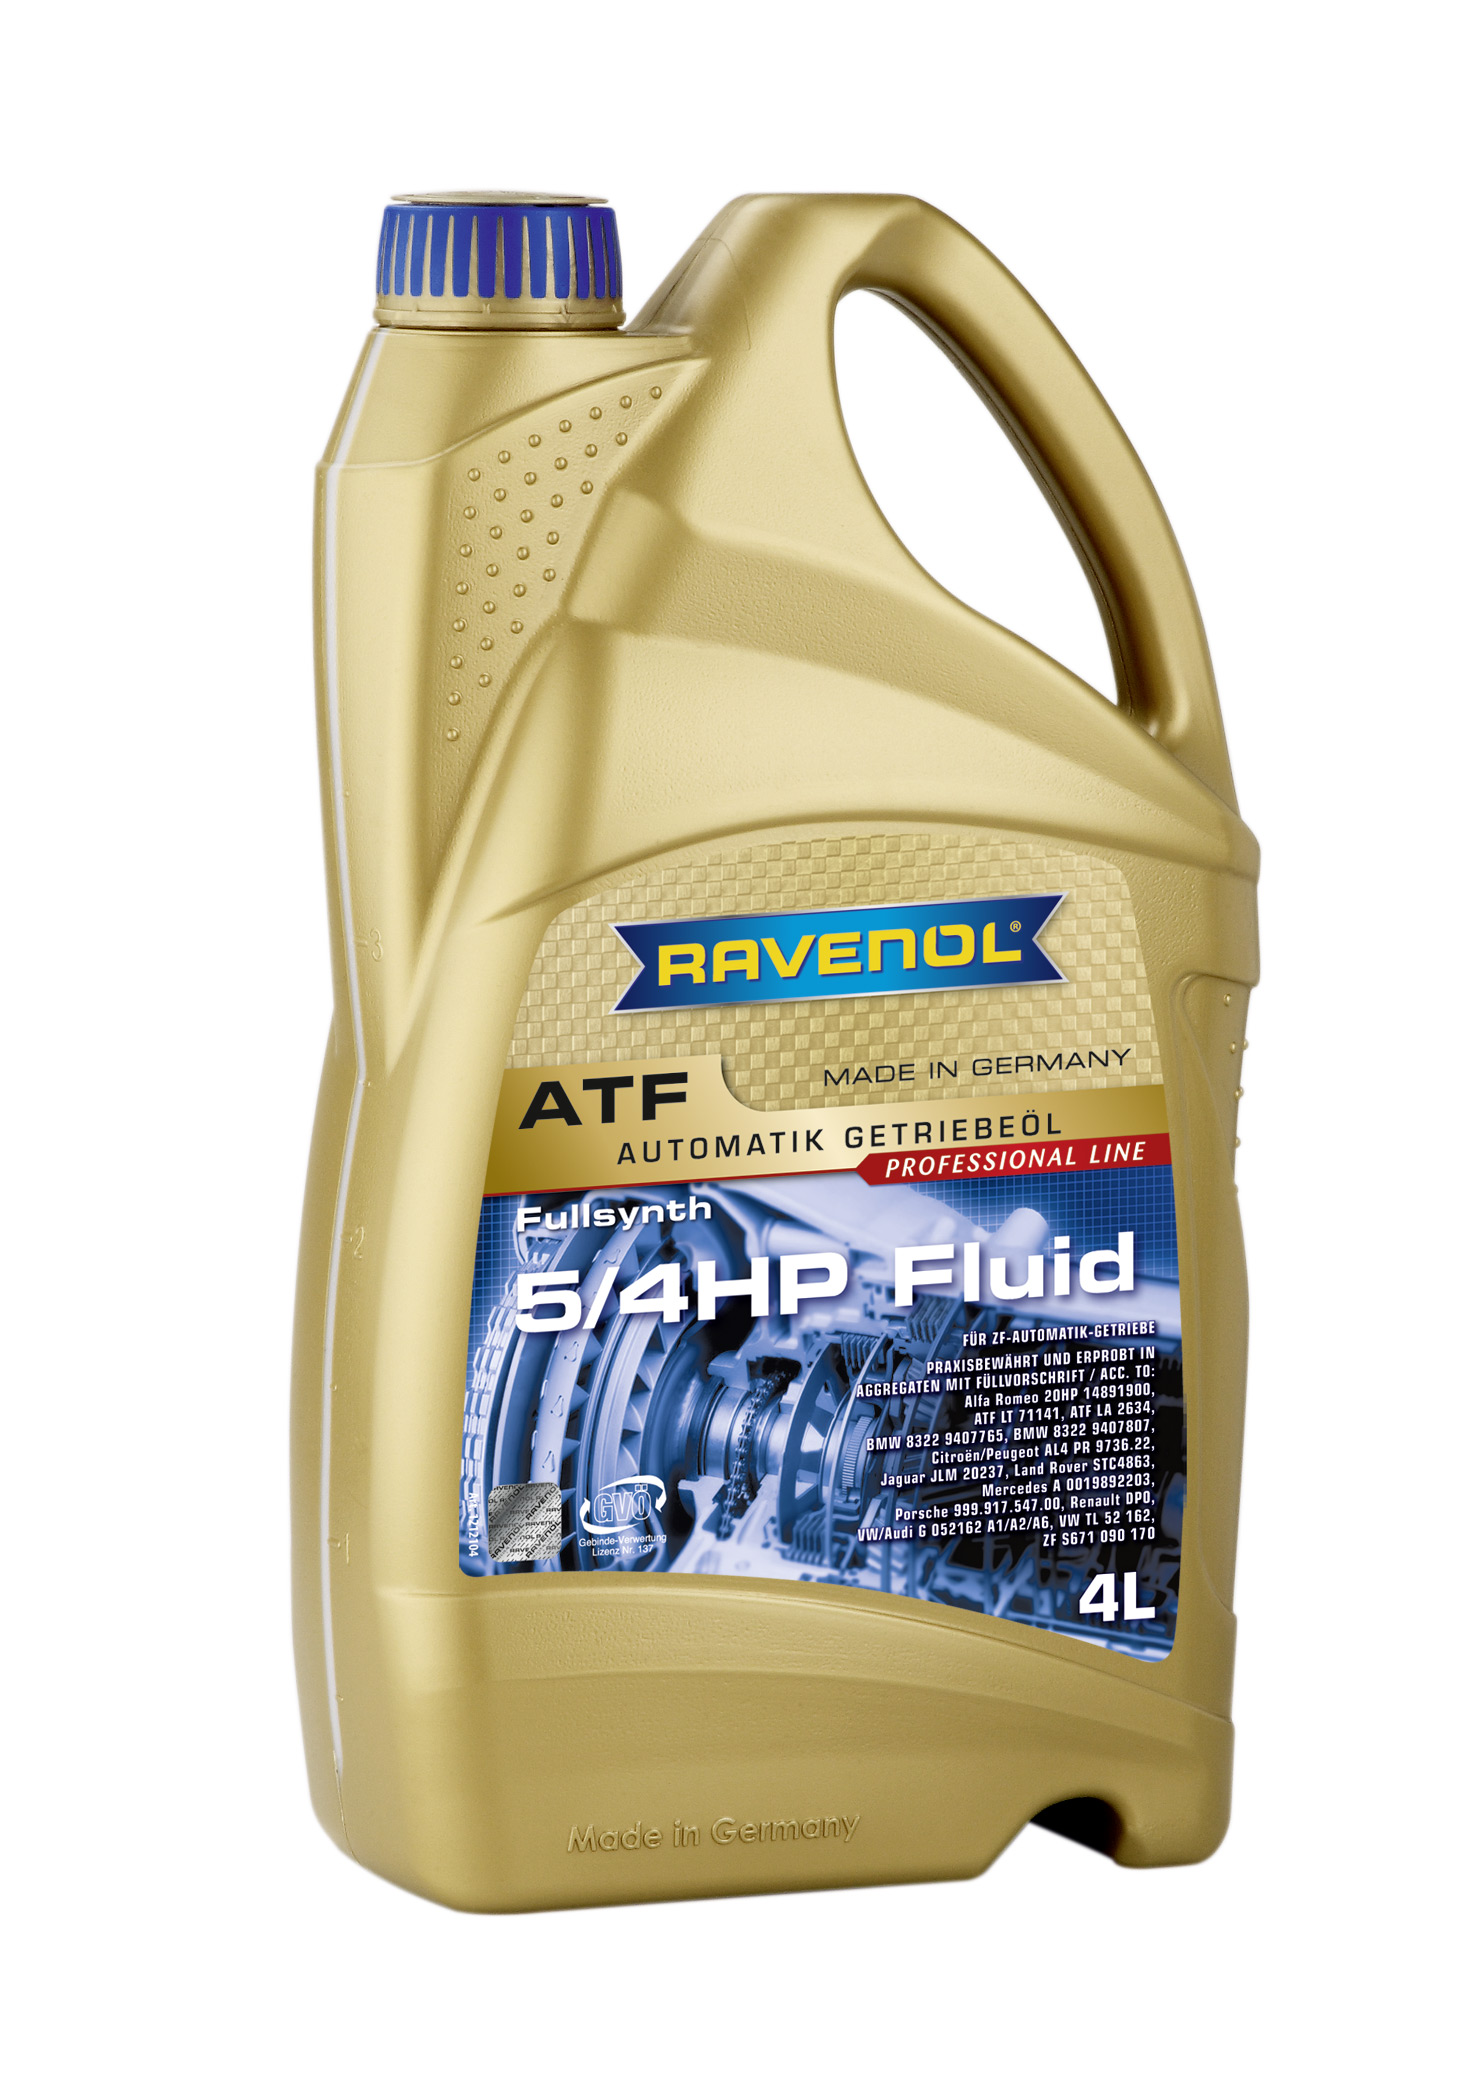 Трансмиссионное масло RAVENOL ATF 5/4 HP (4л) new 4014835733299